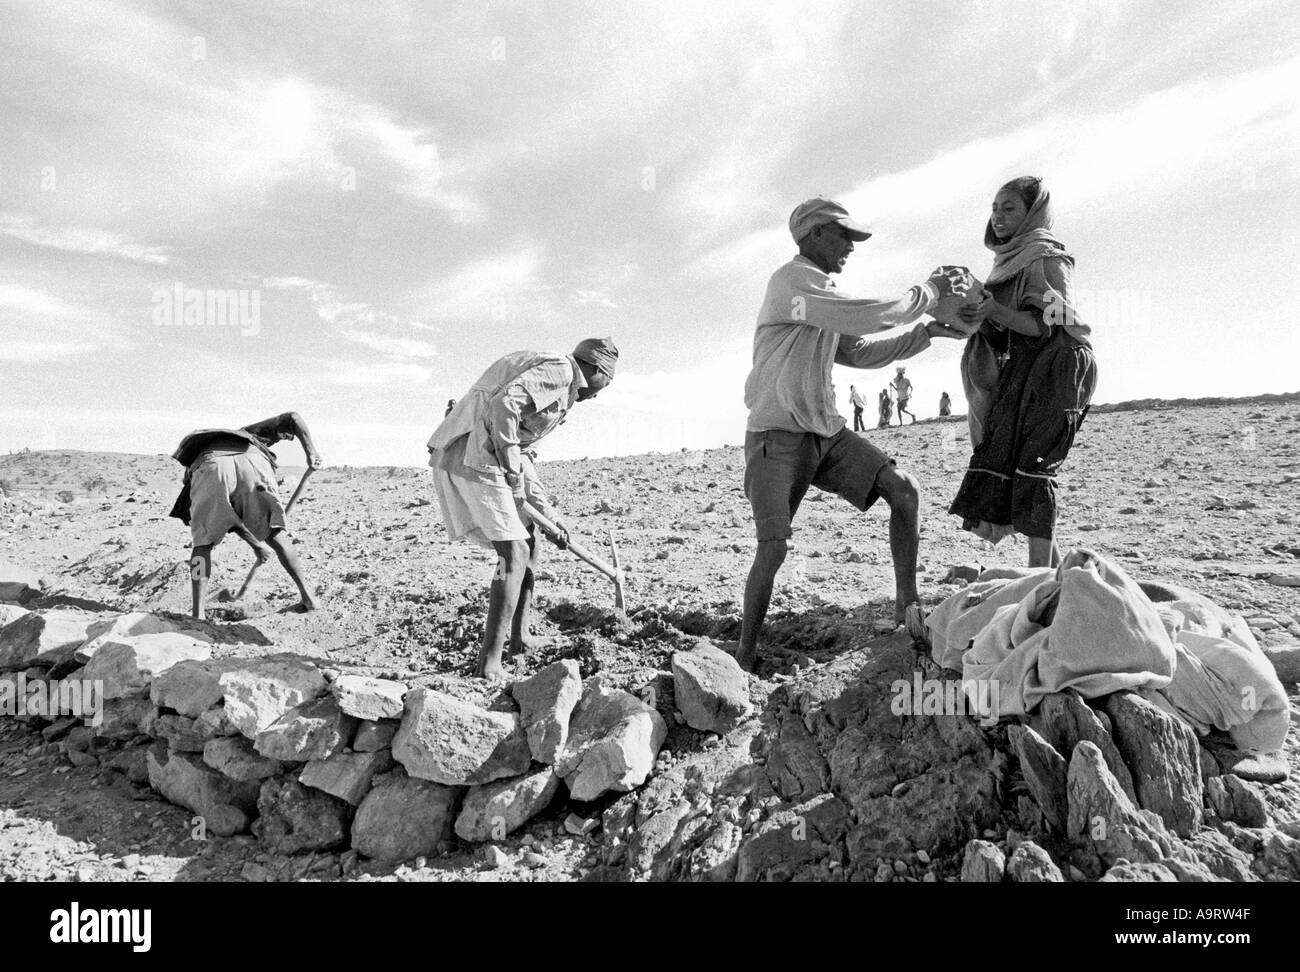 S/W von männlichen und weiblichen Dorfbewohnern auf steinerem Land, um Bodenerosion in einem Food-for-Work-Programm zu verhindern. Tigray, Äthiopien Stockfoto